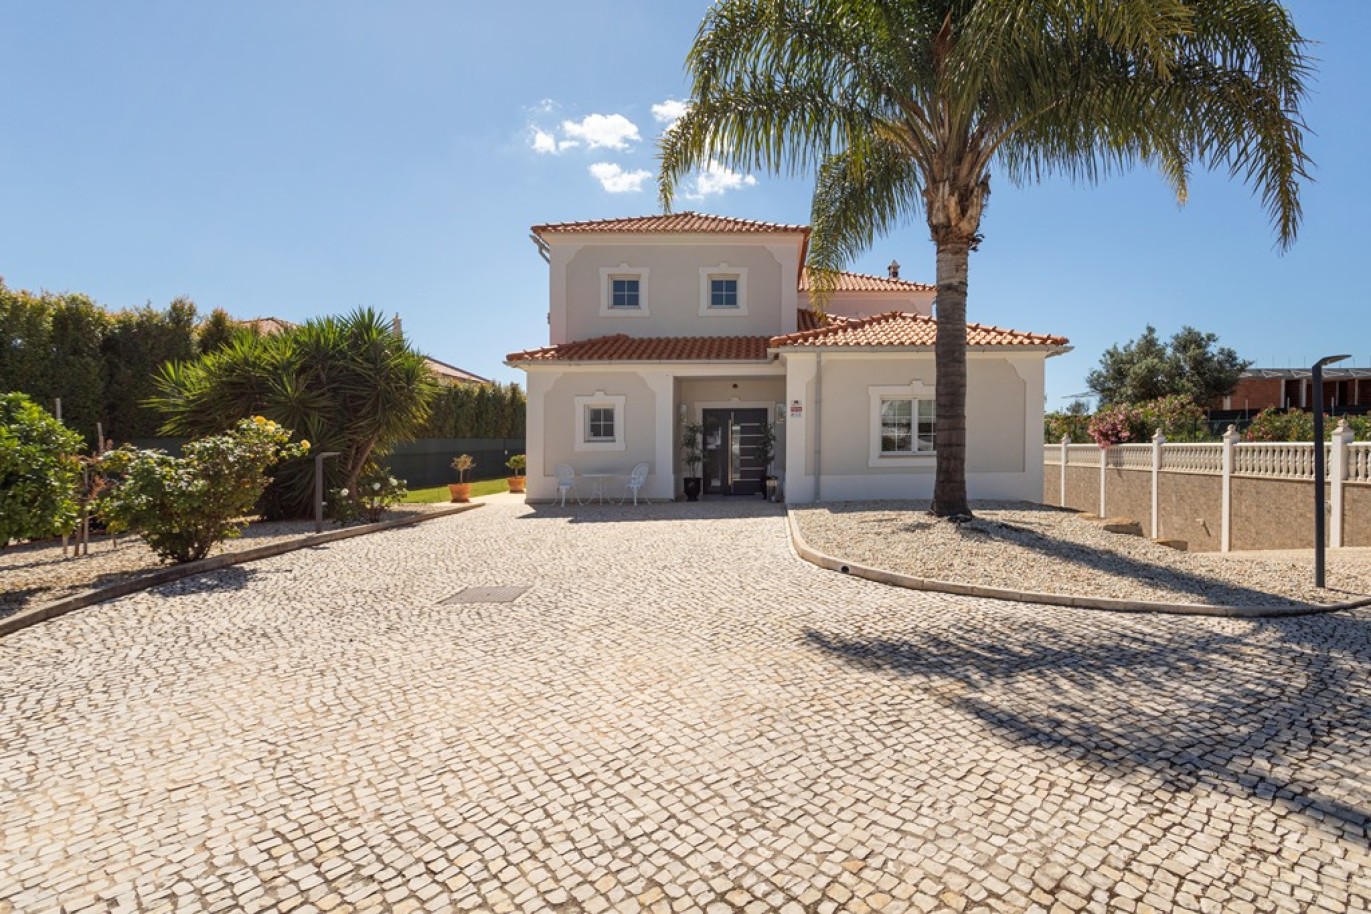 5-bedroom villa with pool, for sale in Vilamoura, Algarve_264465